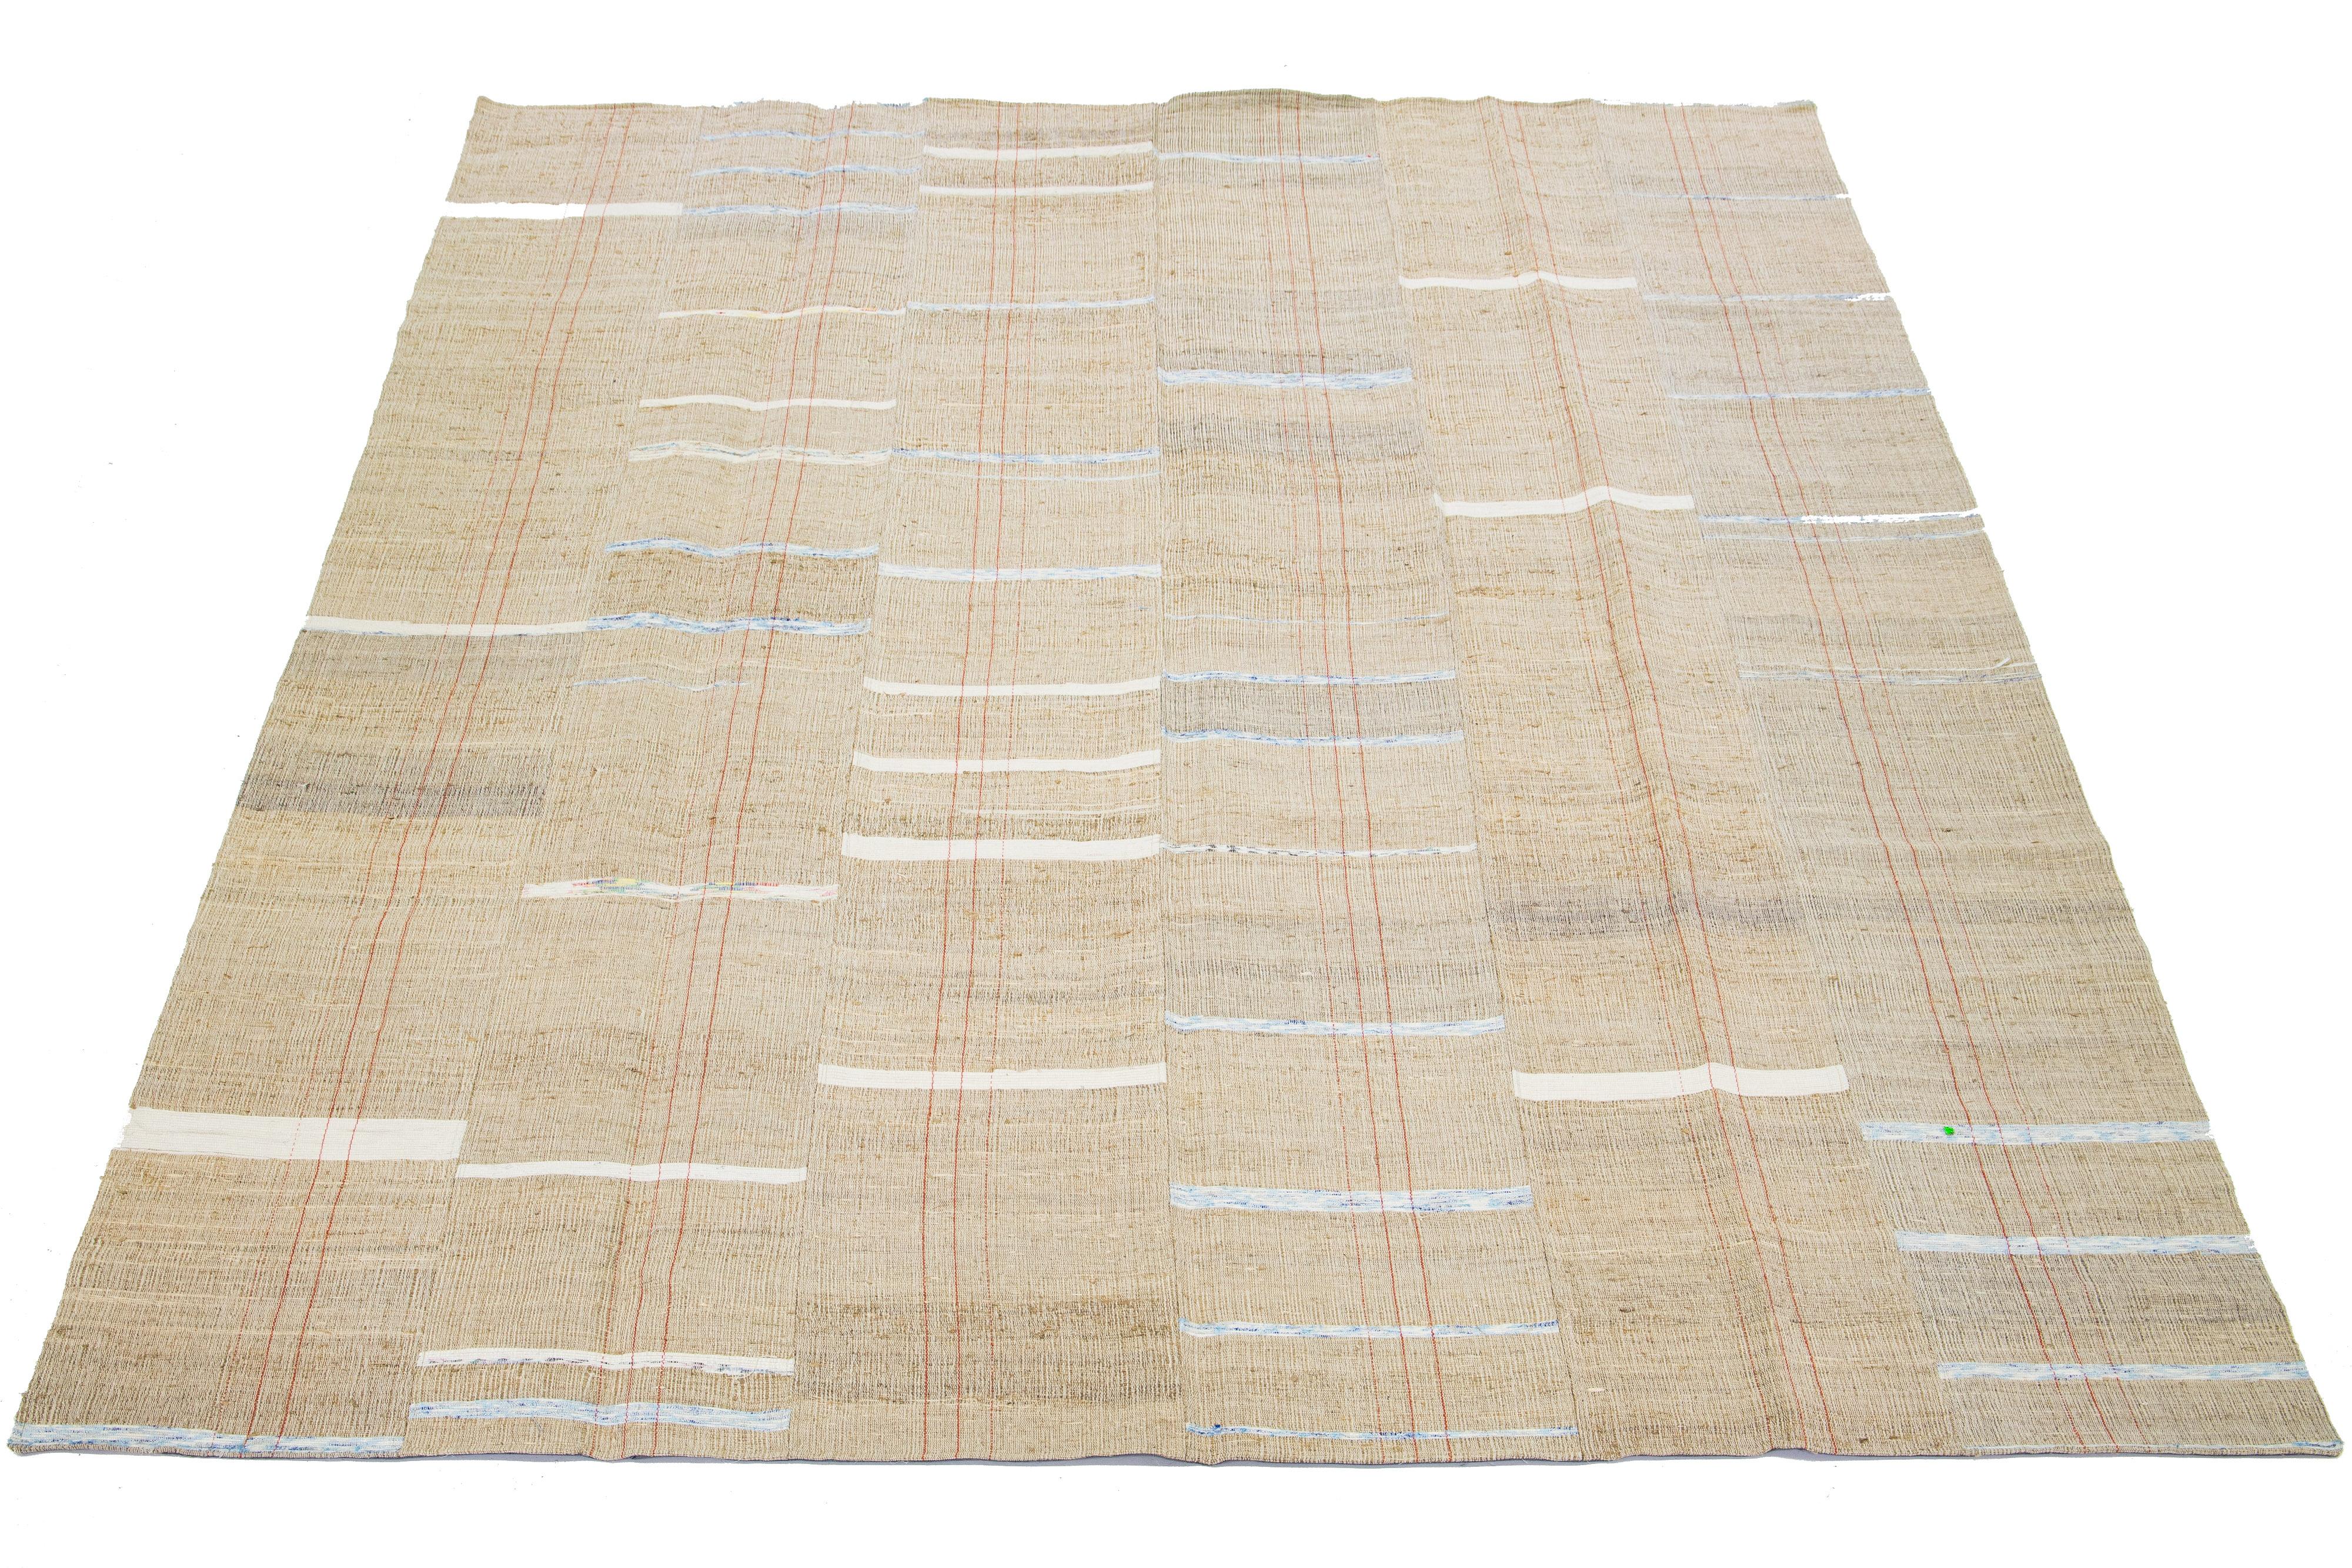 Dieser indische Teppich zeigt ein modernes Flachgewebe im Kilim-Stil, das aus Wolle gefertigt ist. Der Teppich hat ein beiges Feld mit einem gestreiften Muster in Weiß-, Blau- und Rosttönen.

Dieser Teppich misst 9'1